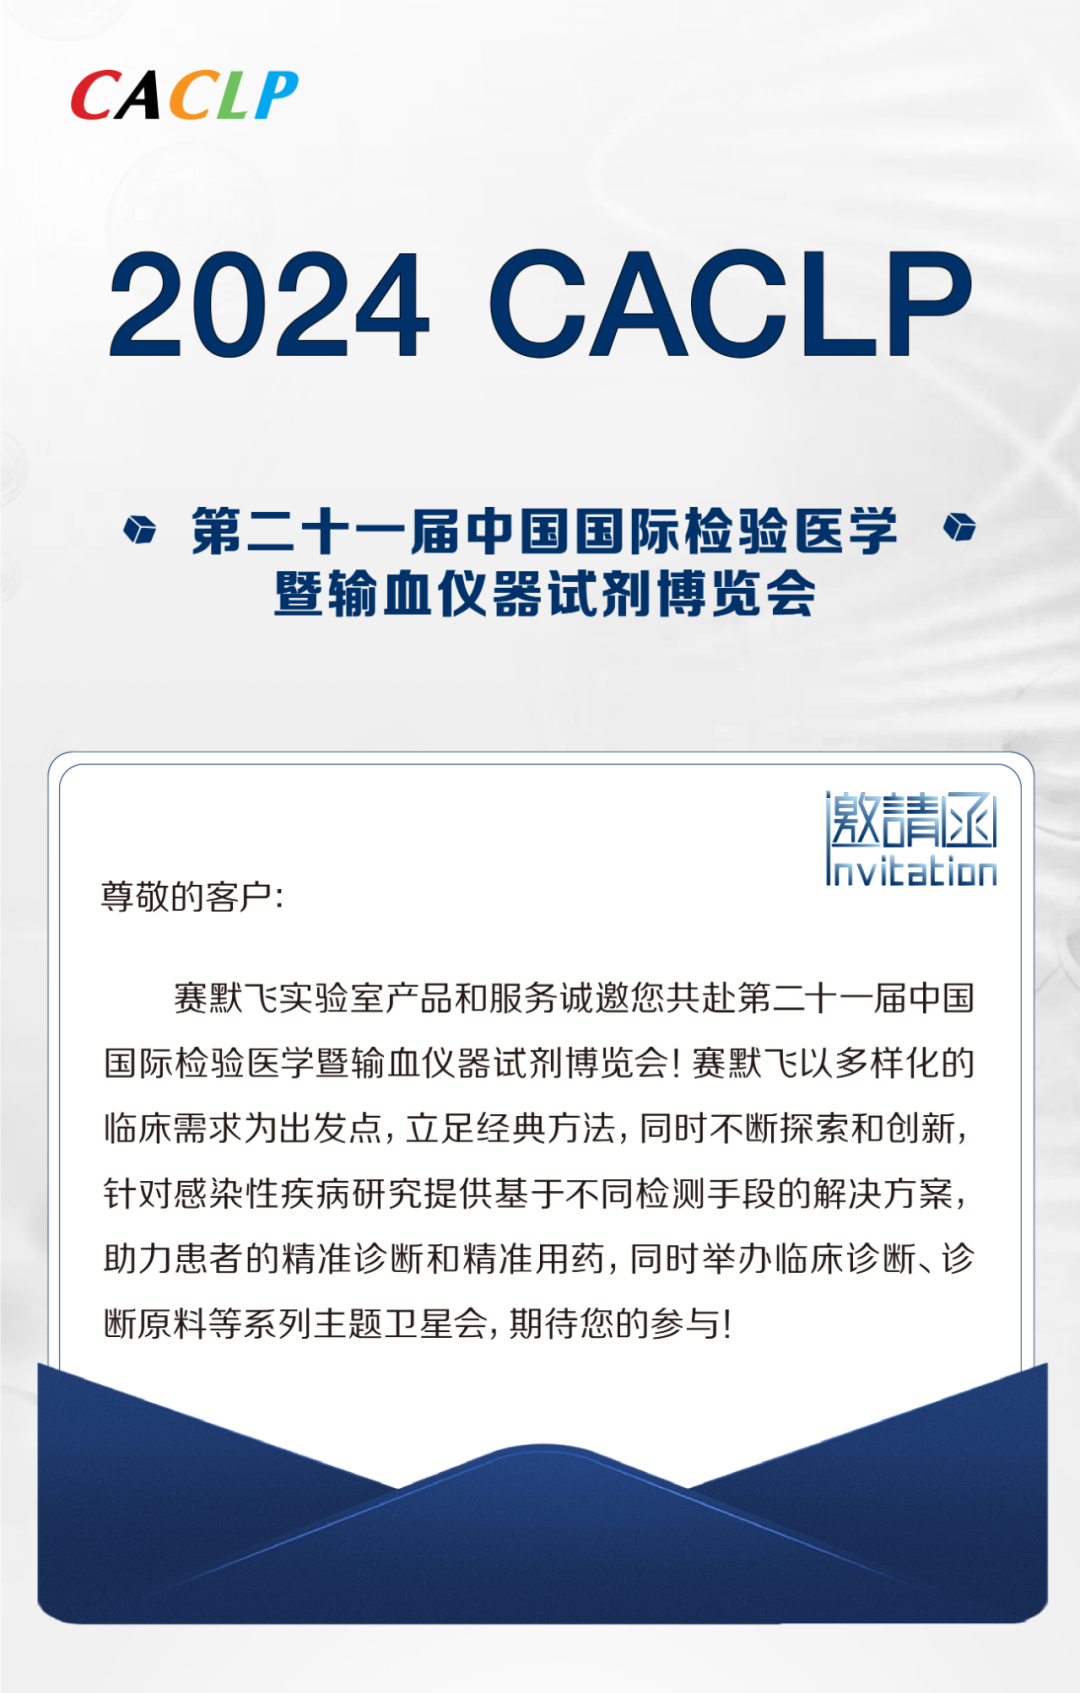 盛会邀请丨2024 CACLP，赛默飞实验室耗材和化学品与您重庆见！